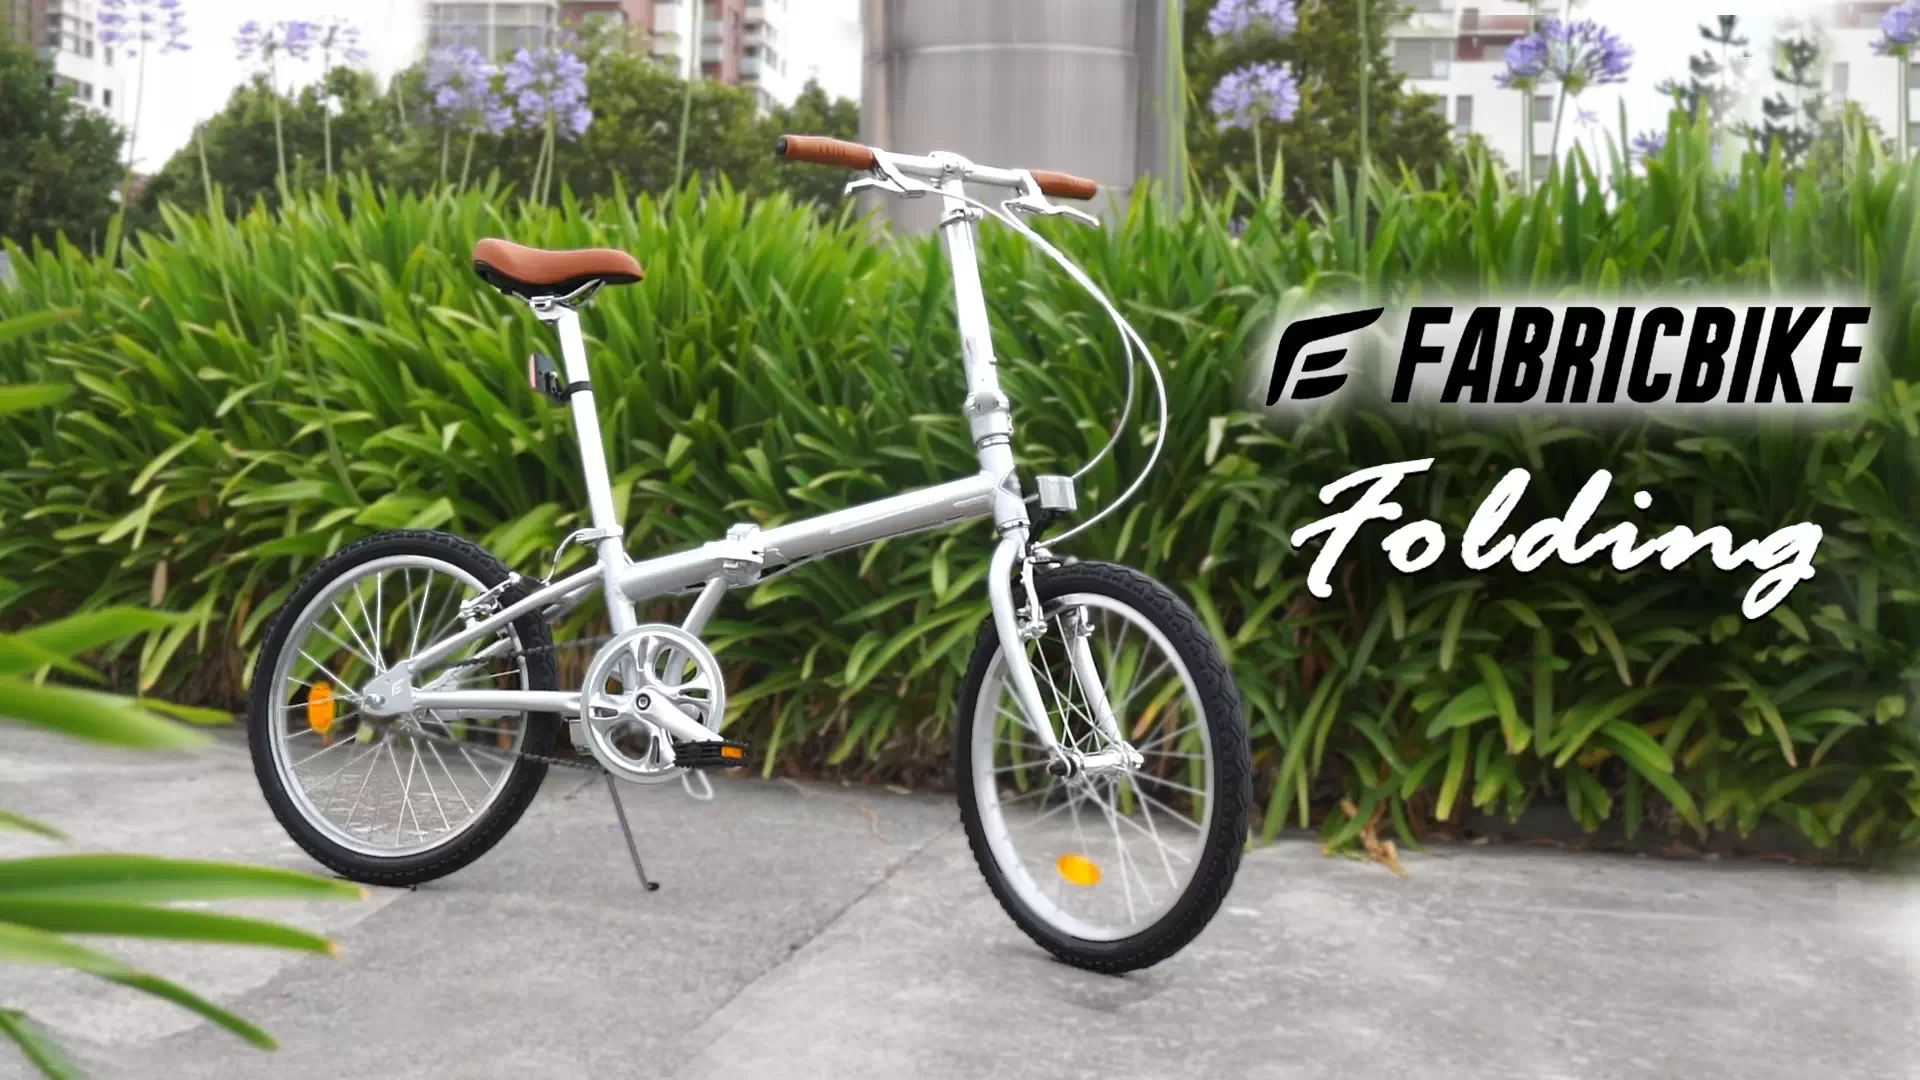 Fabricbike Folding, diseñada para triunfar en la ciudad